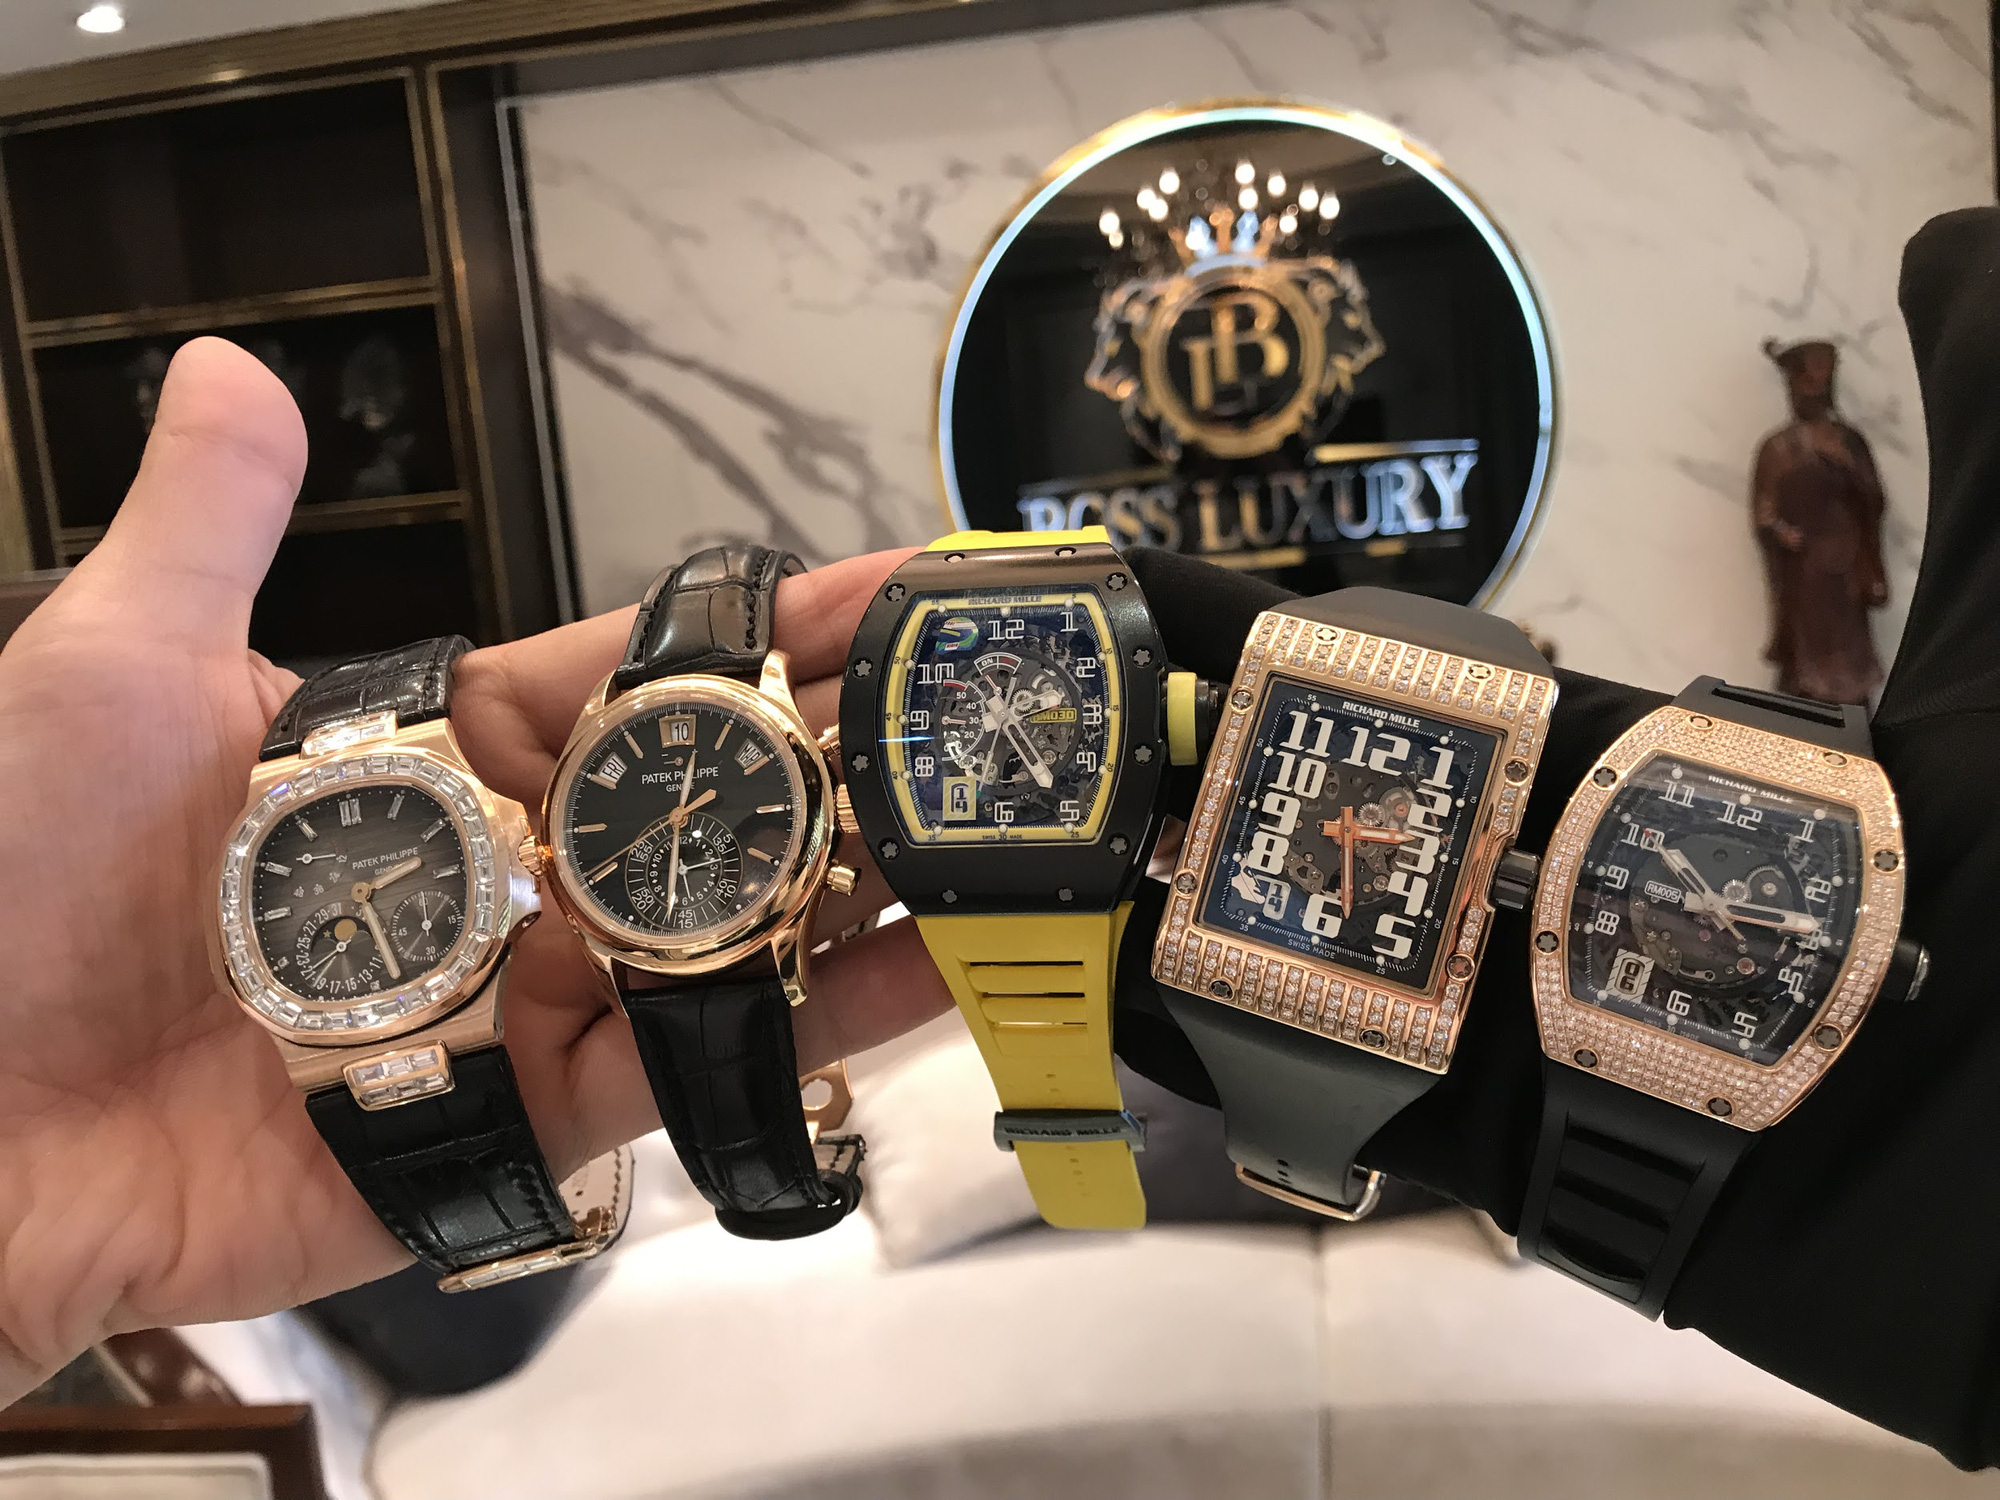 Boss Luxury chỉ ra 5 lưu ý quan trọng khi chọn mua đồng hồ cao cấp - Ảnh 2.